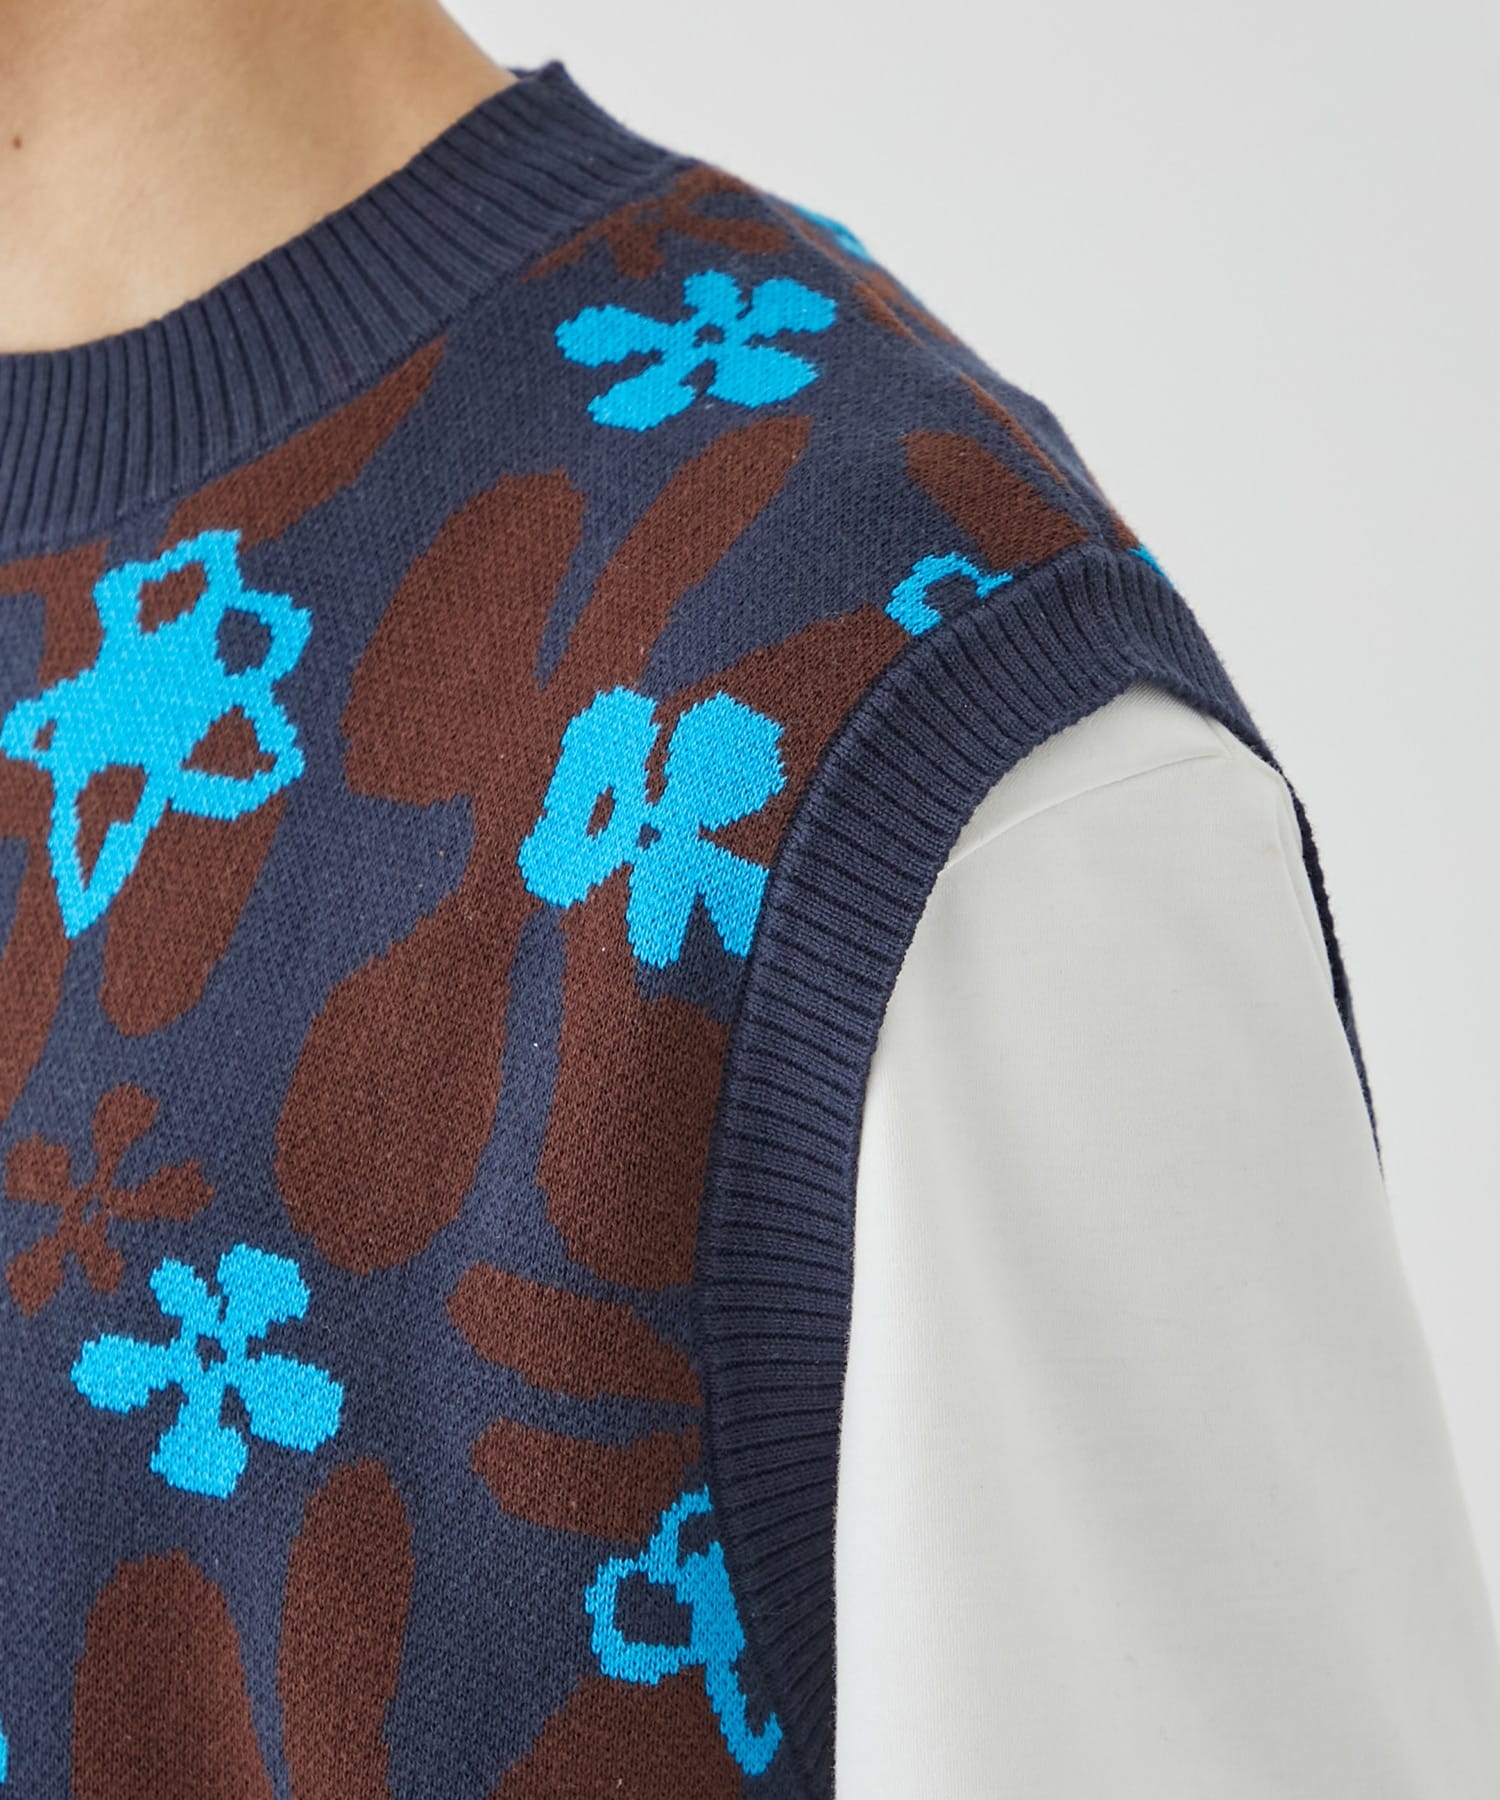 Flower camo knit  vest TTT MSW